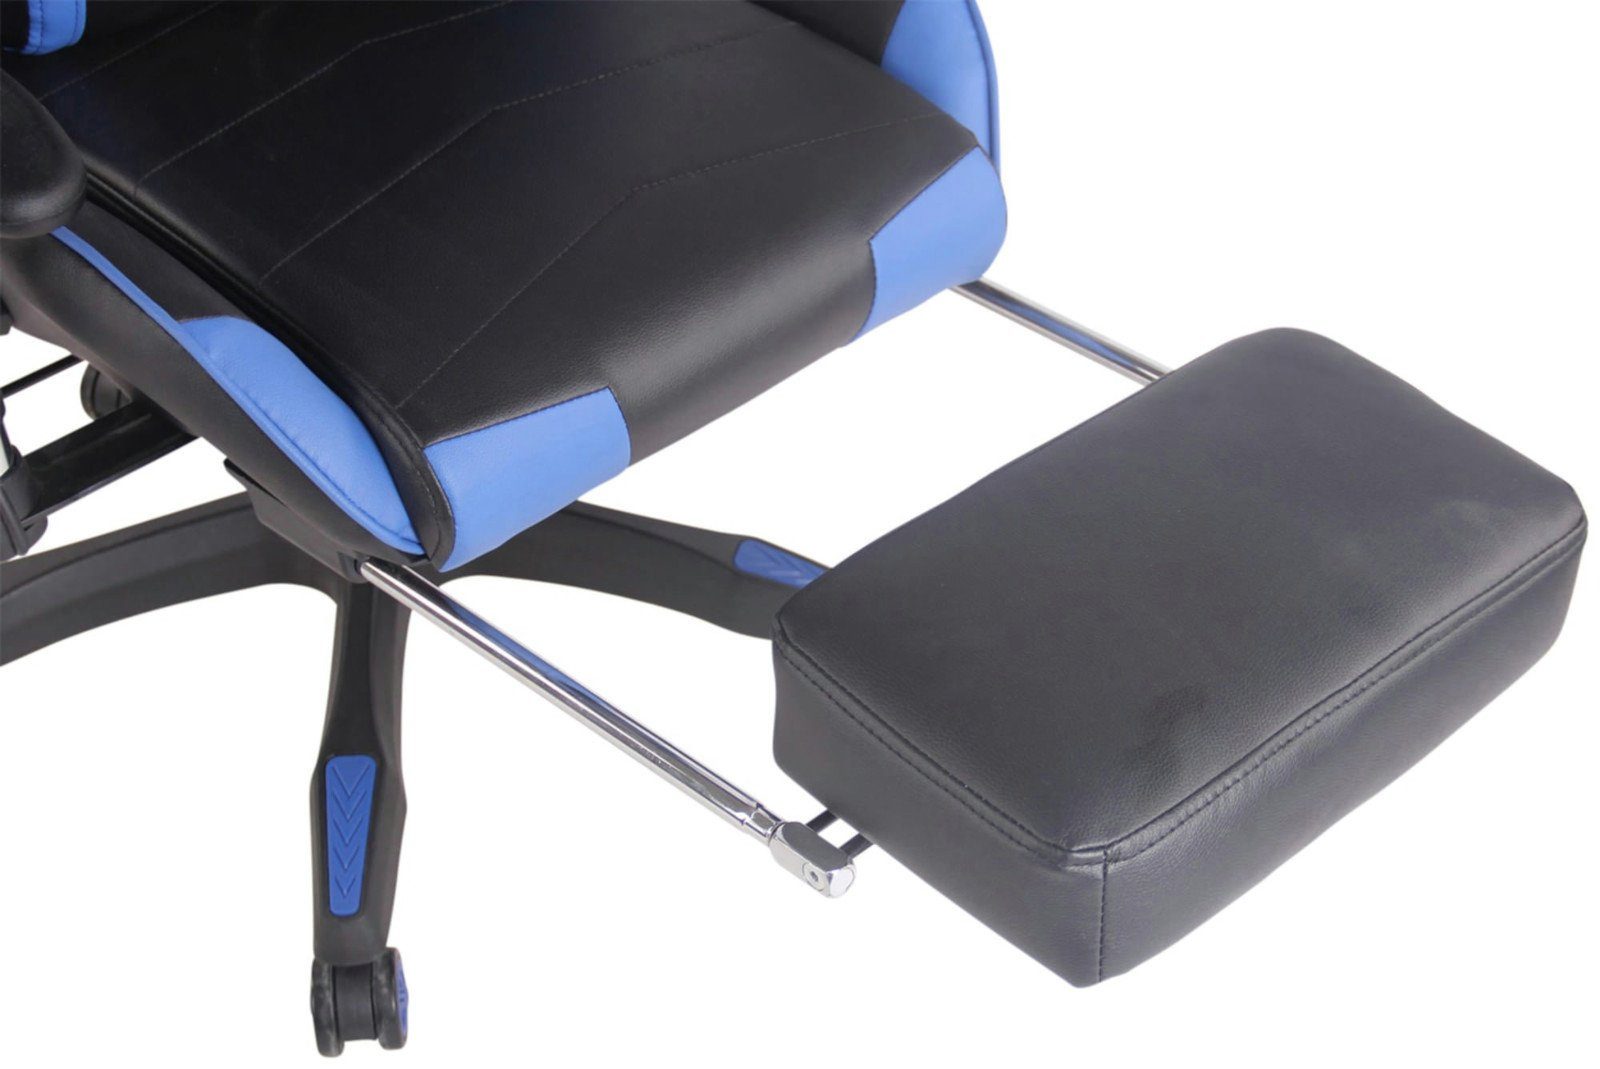 CLP Gaming Chair Turbo Fußablage, drehbar mit und Höhenverstellbar